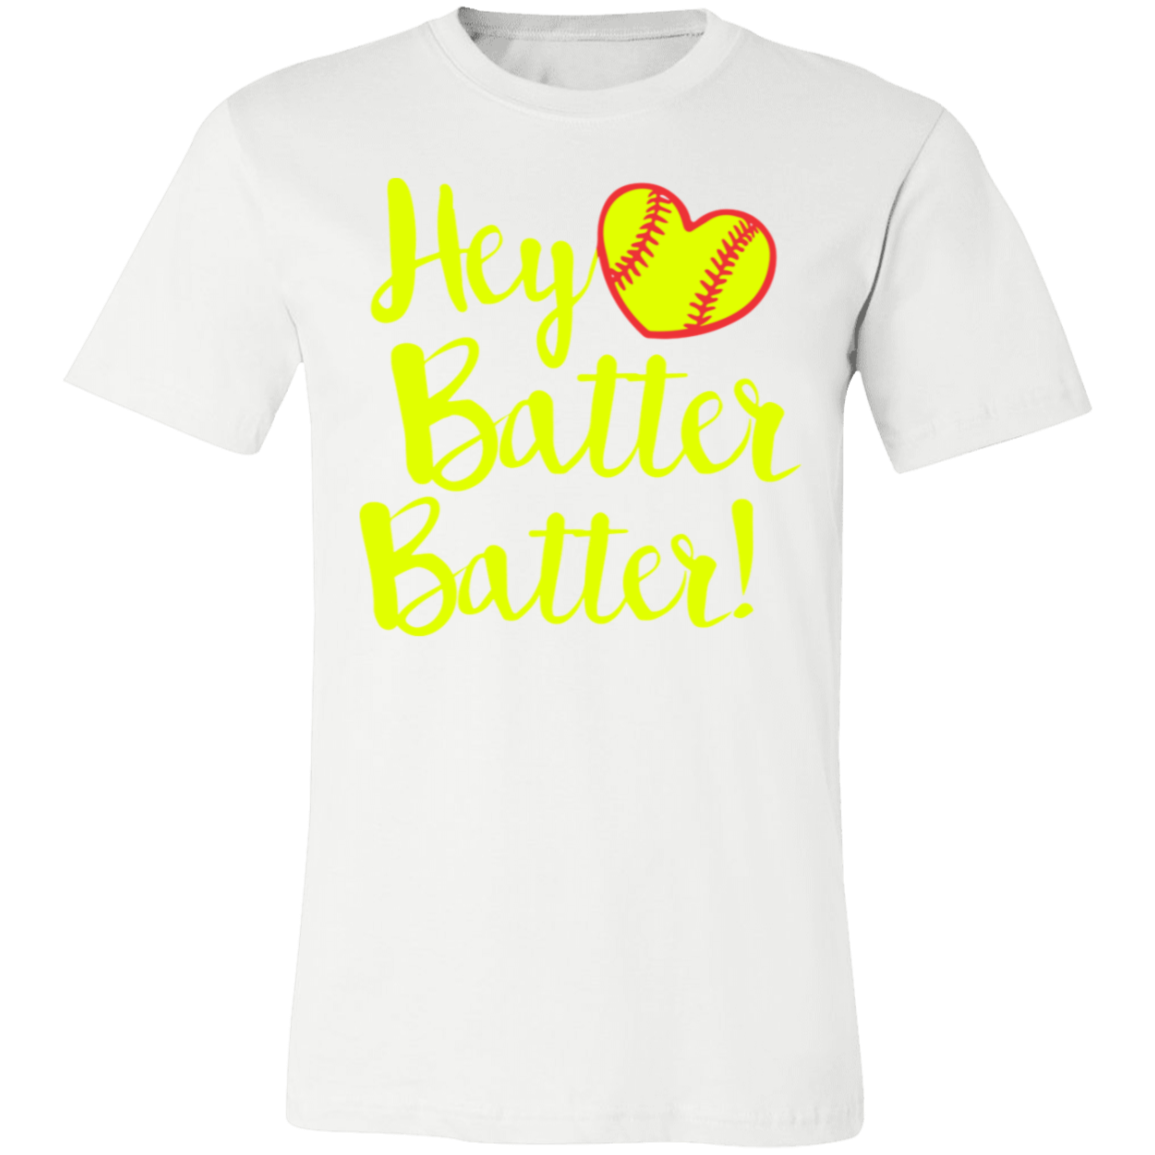 Hey Batter batter Premium Women's Tee